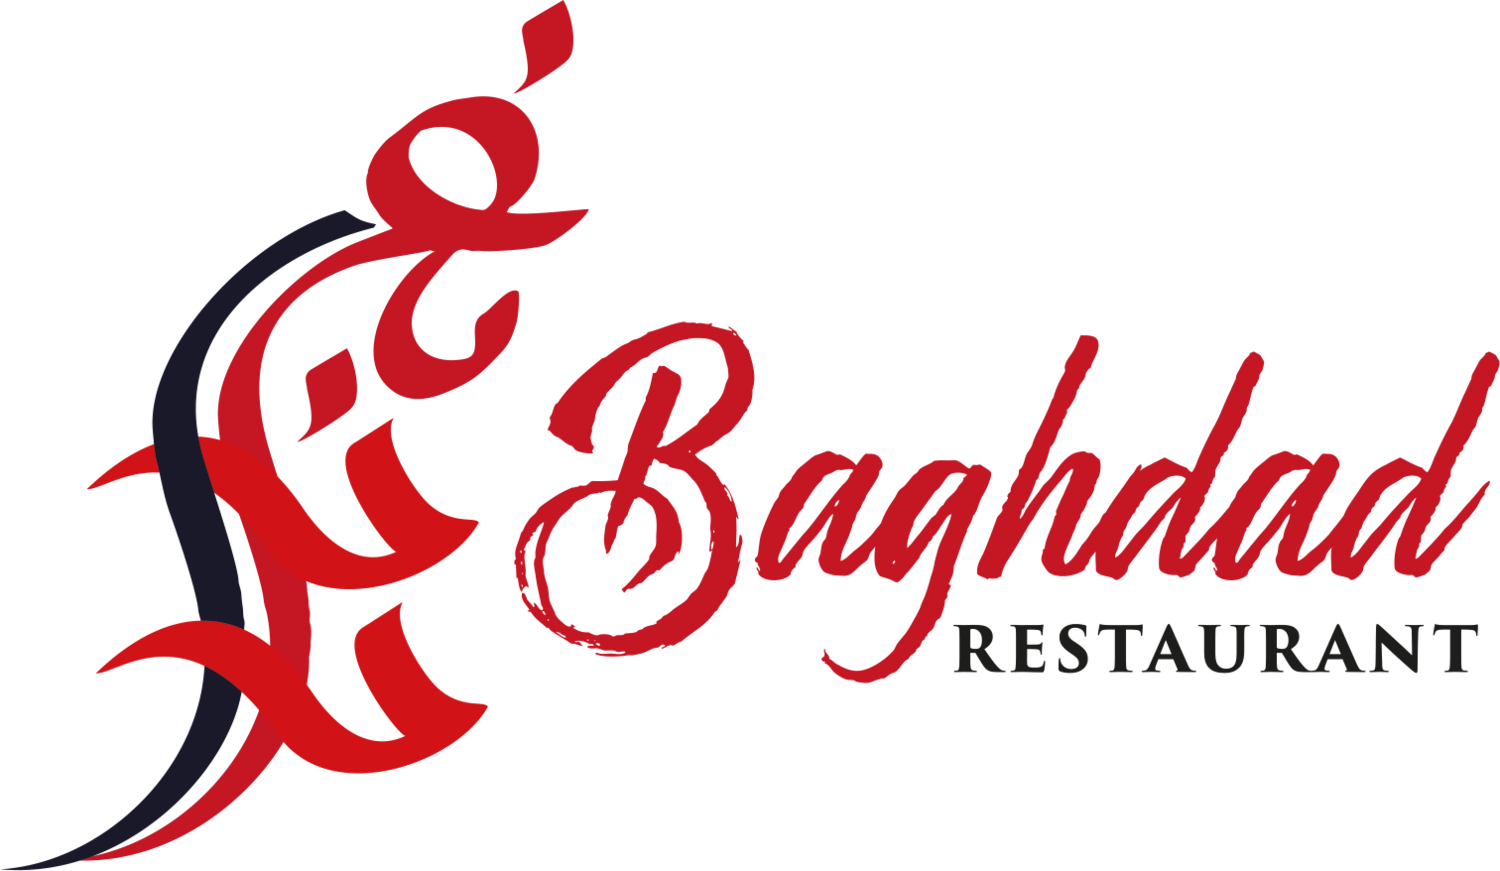 Baghdad Restaurant LLC